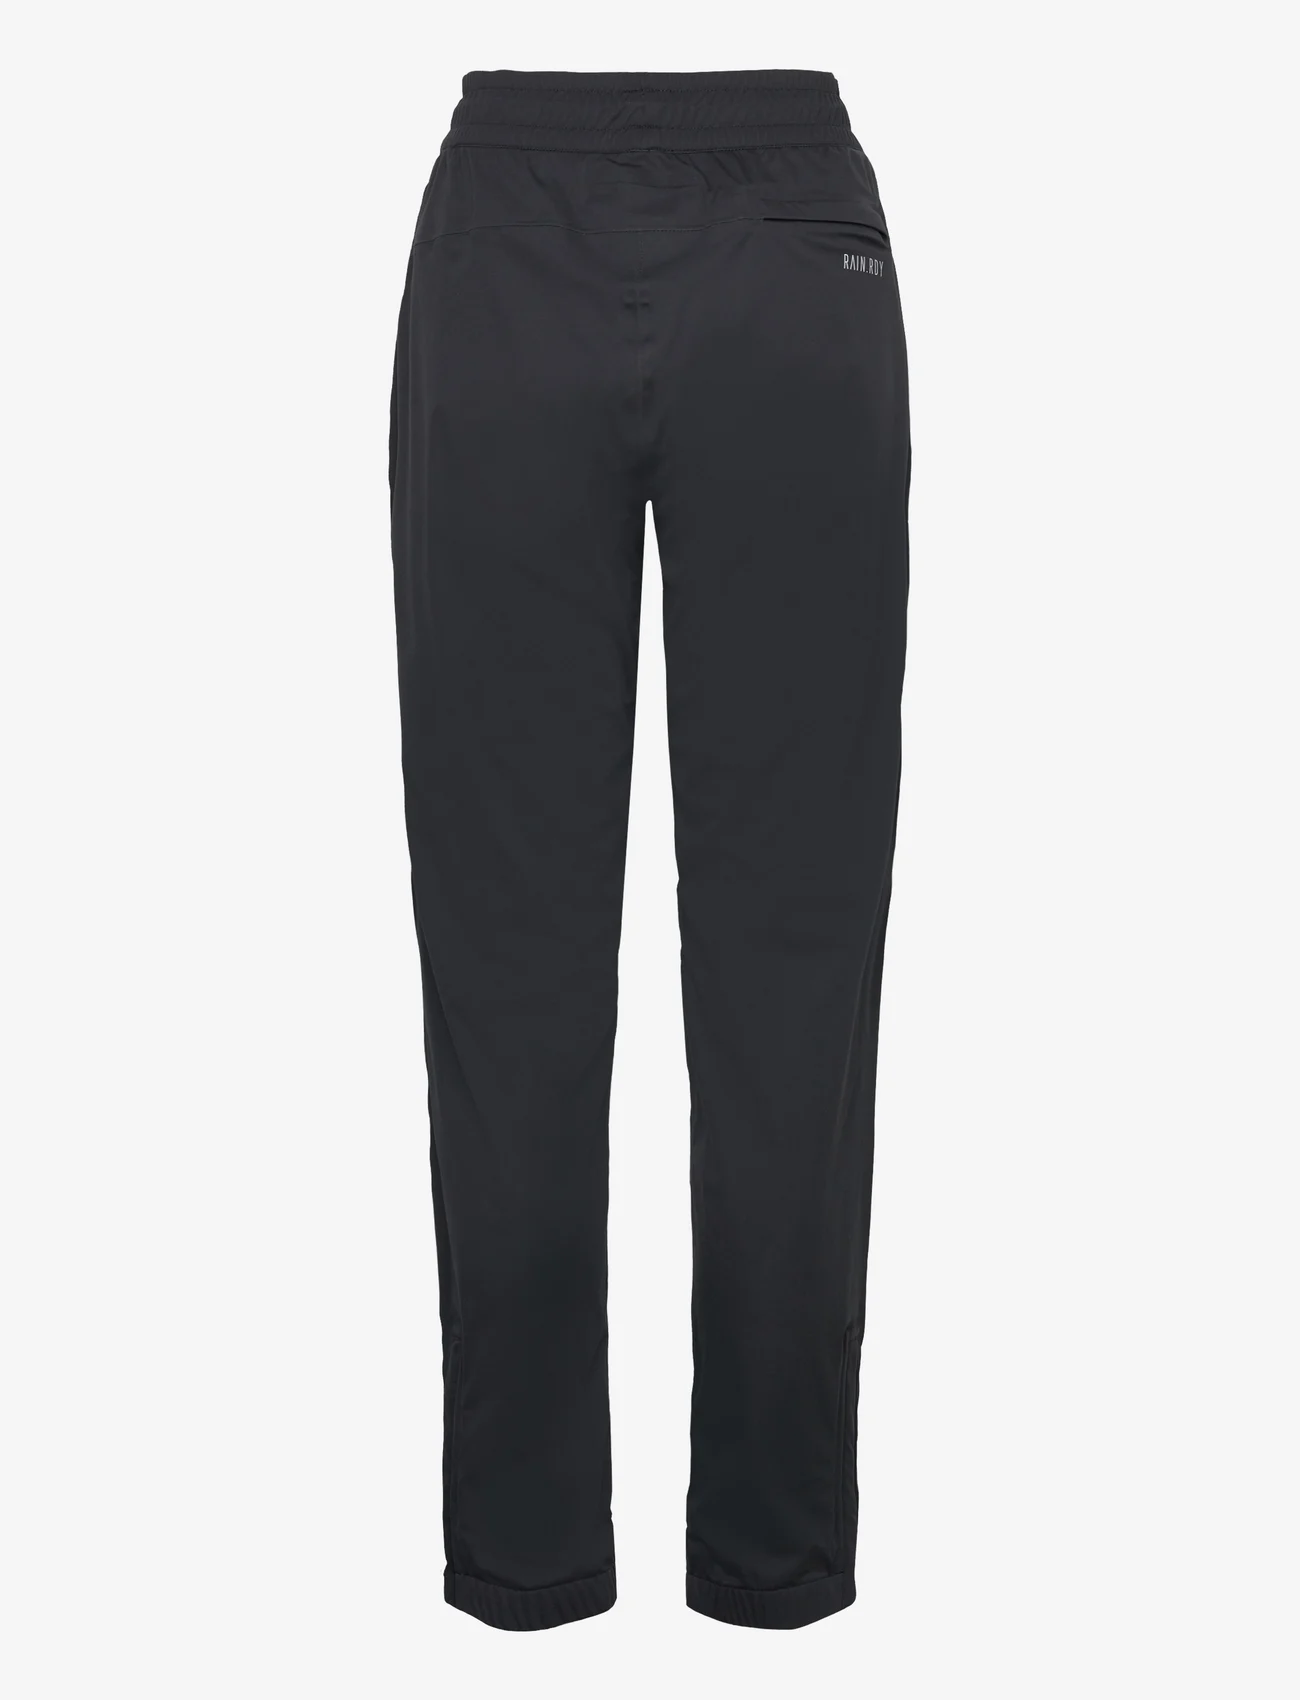 adidas Golf - W R.RDY PT - golf pants - black - 1